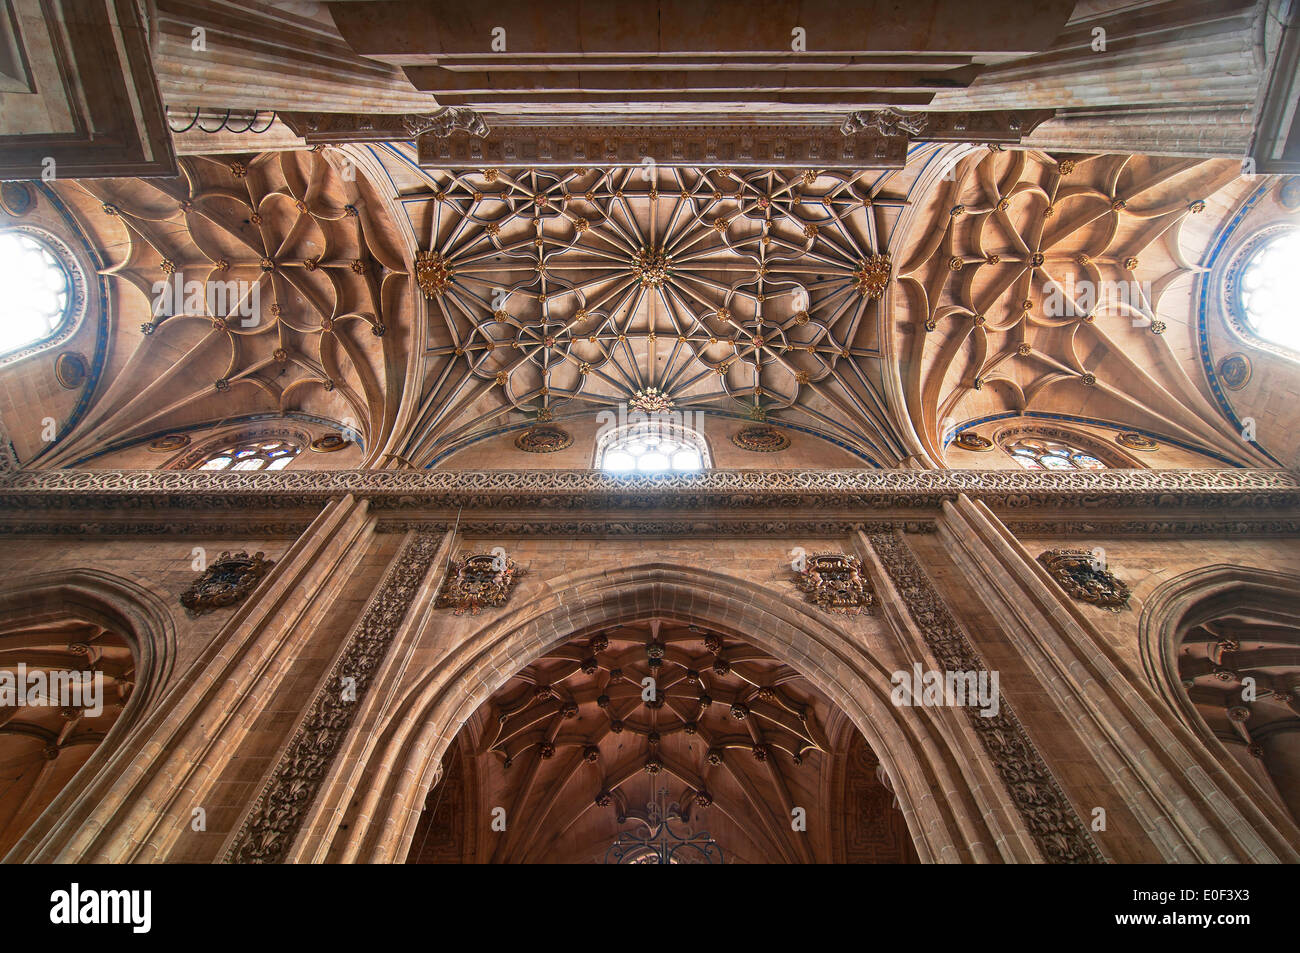 La nuova cattedrale - interno, XVI secolo, Salamanca, nella regione di Castilla y Leon, Spagna, Europa Foto Stock